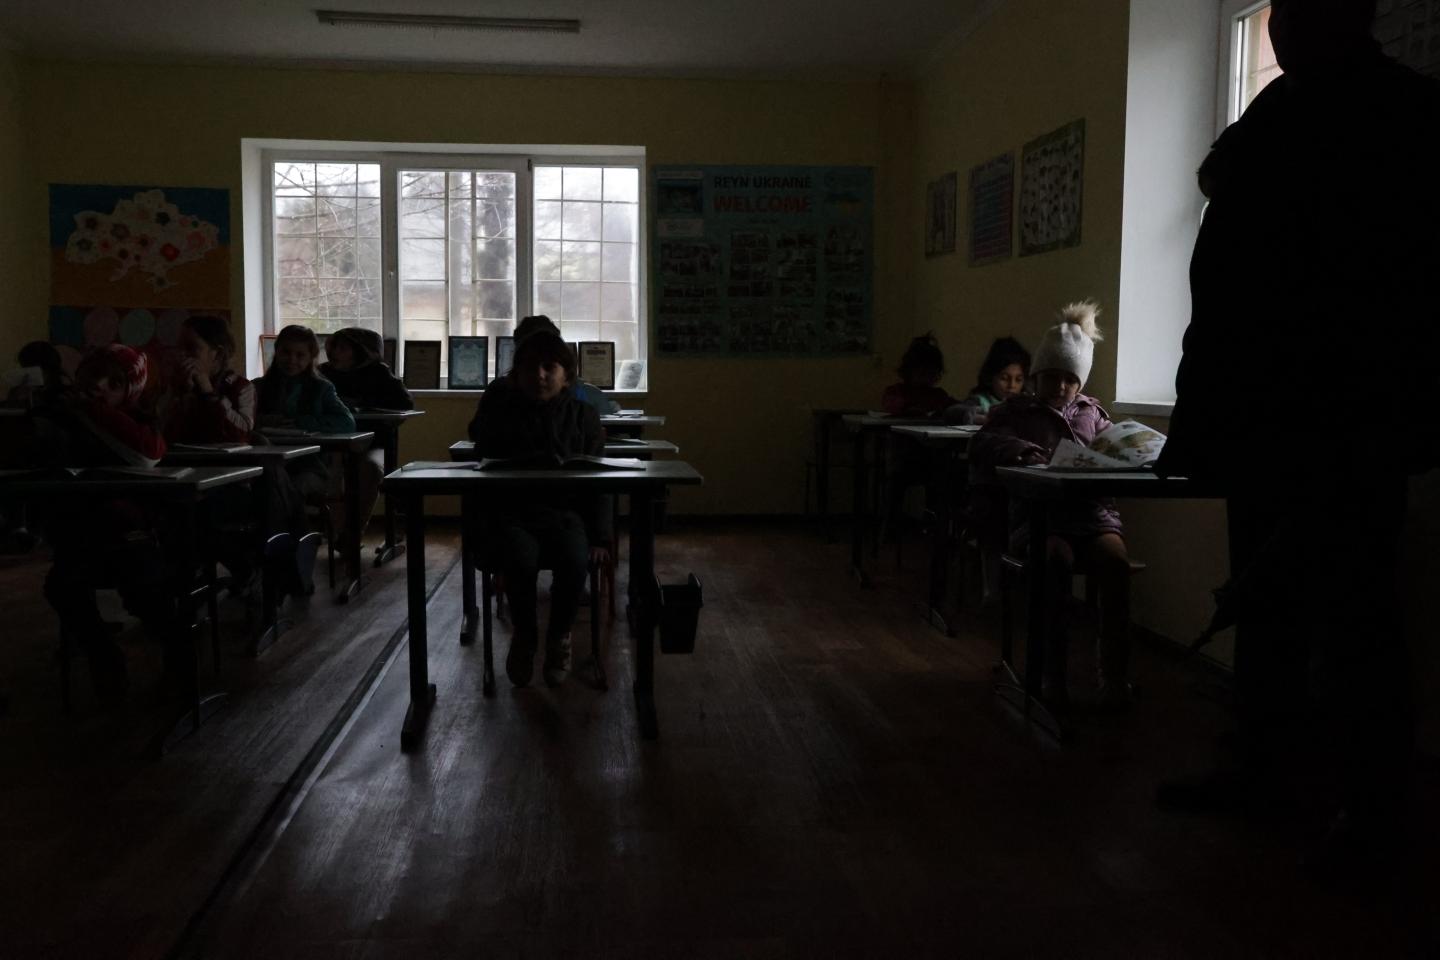 Children sitting a dark classroom